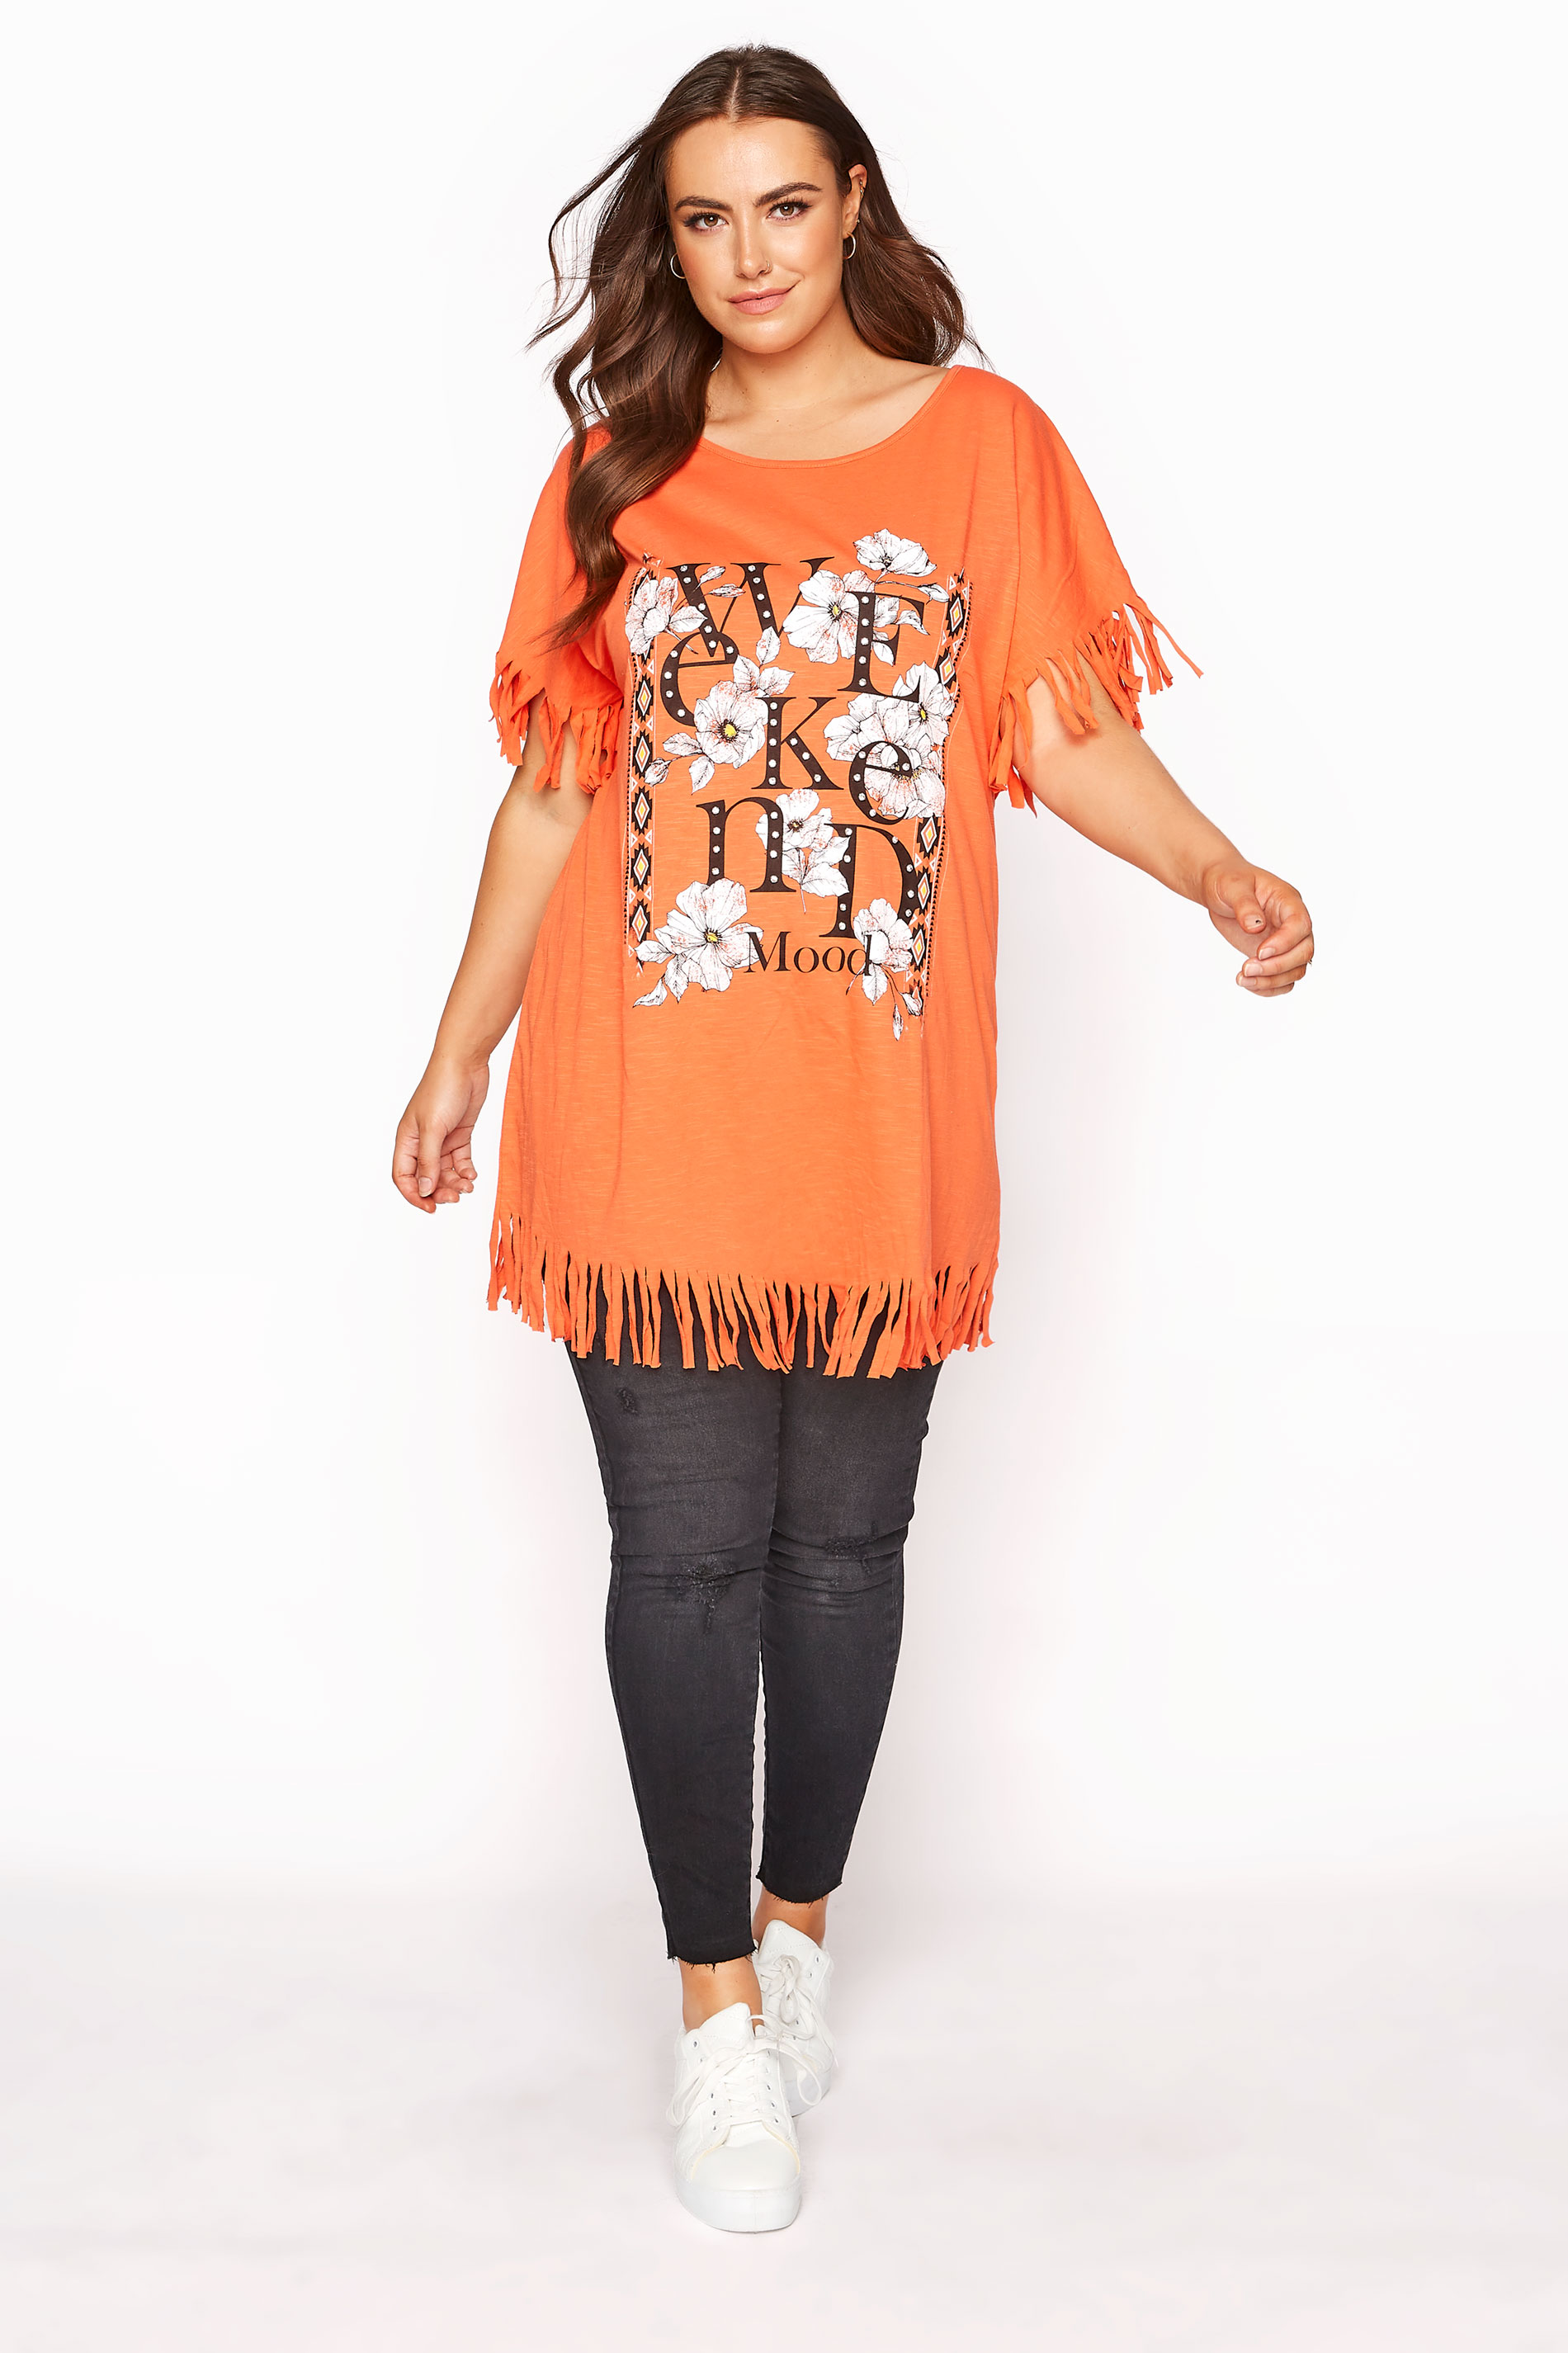 Grande taille  Tops Grande taille  Tops à Slogans | T-Shirt Orange à Franges Slogan 'Weekend Mood' - KR47482